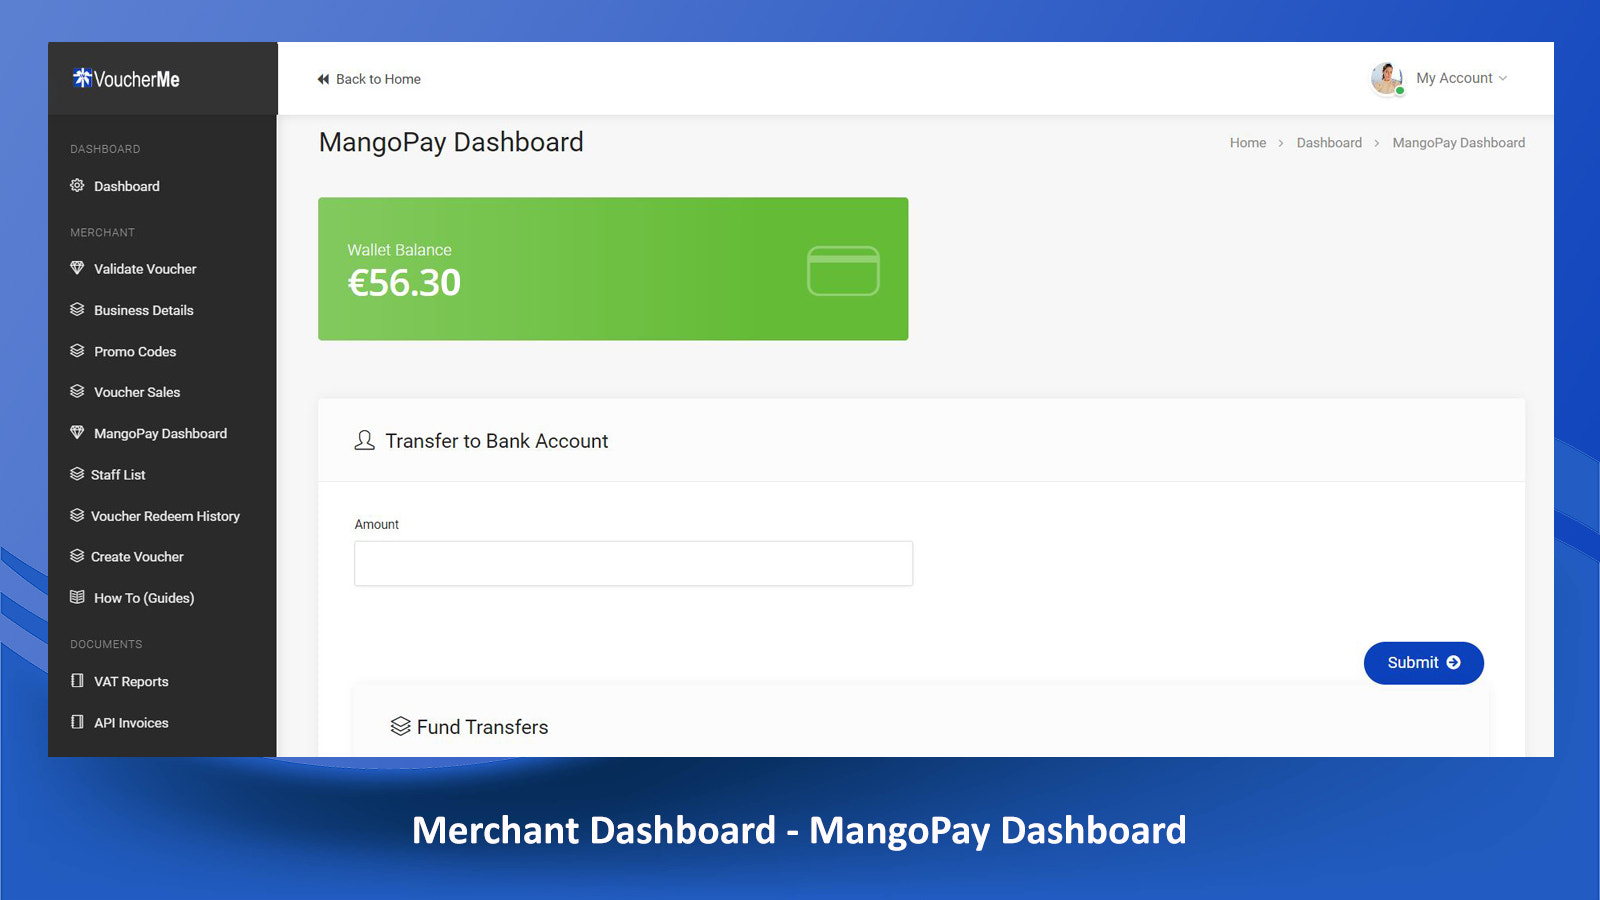 Merchant Dashboard - MangoPay Dashboard